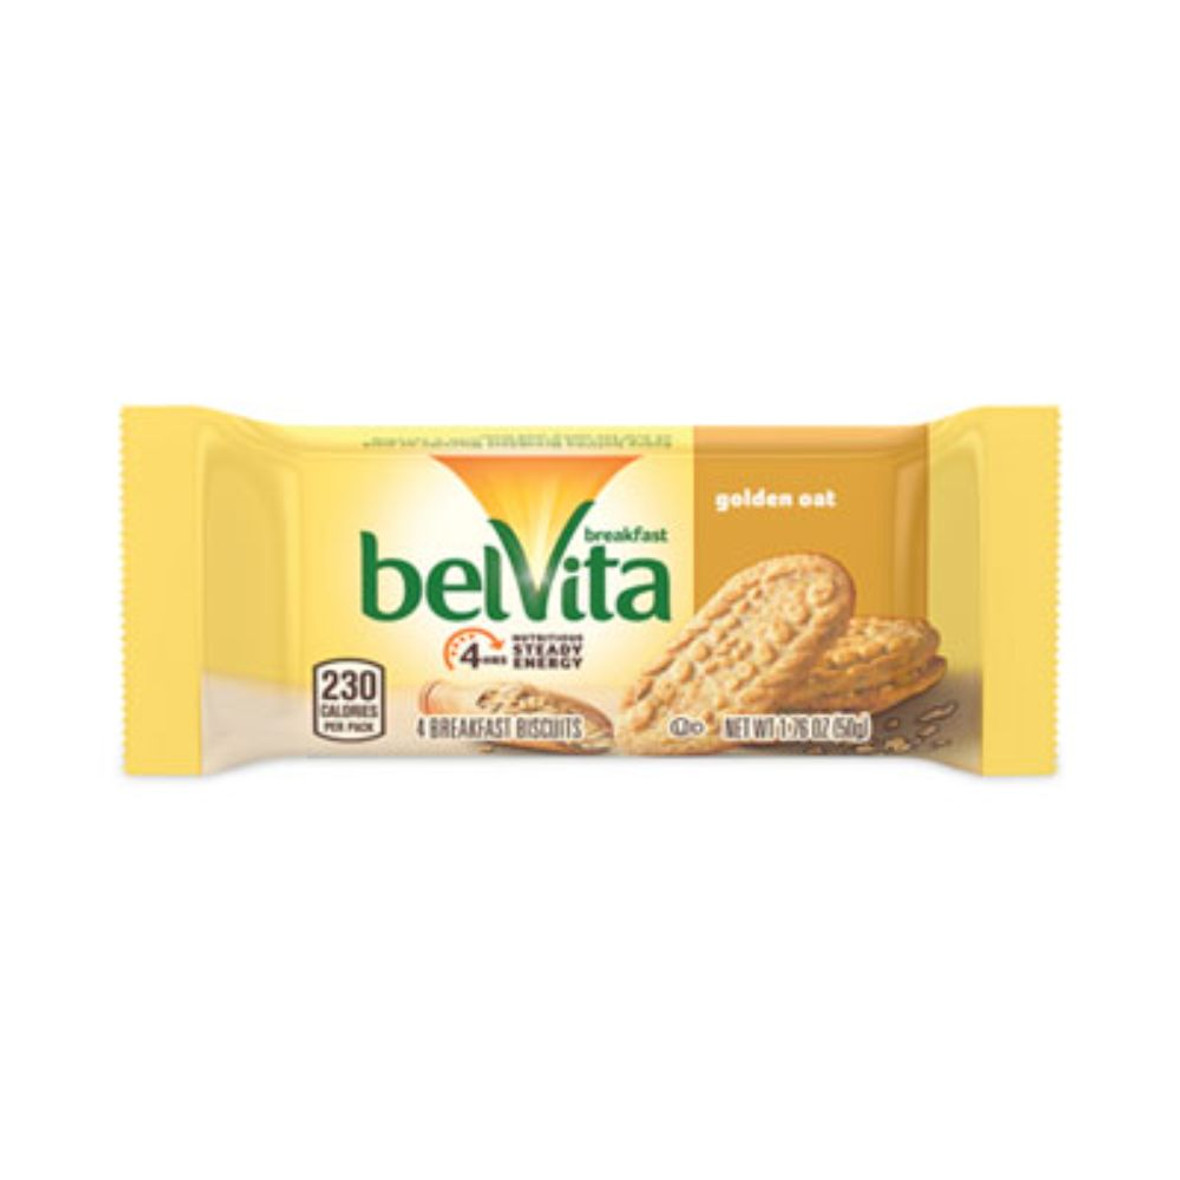 Nabisco Belvita Breakfast Biscuits, Golden Oat, 1.76 Oz